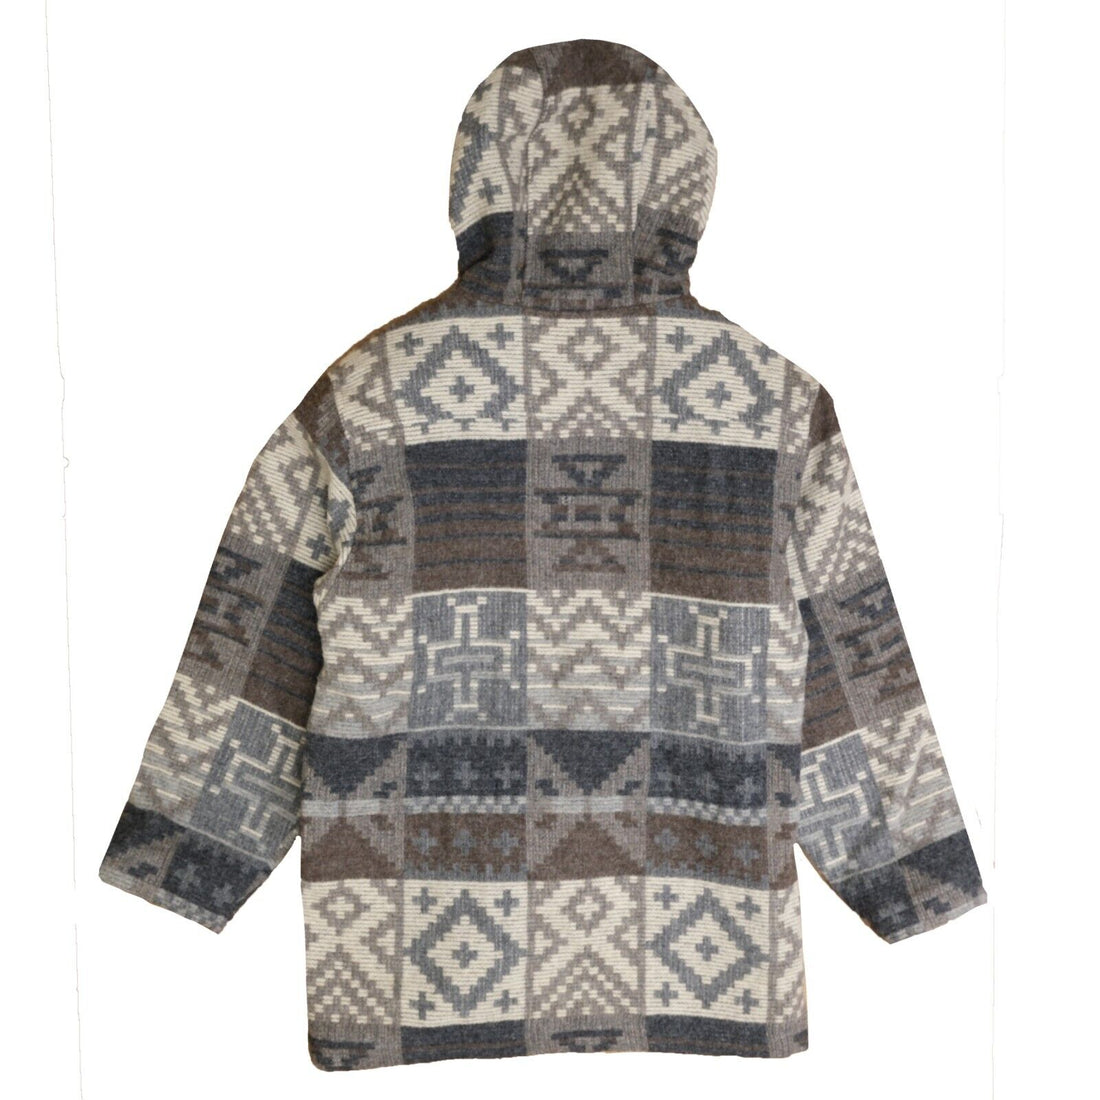 Vintage Woolrich Wool Parka Coat Jacket Size Medium Hooded Aztec